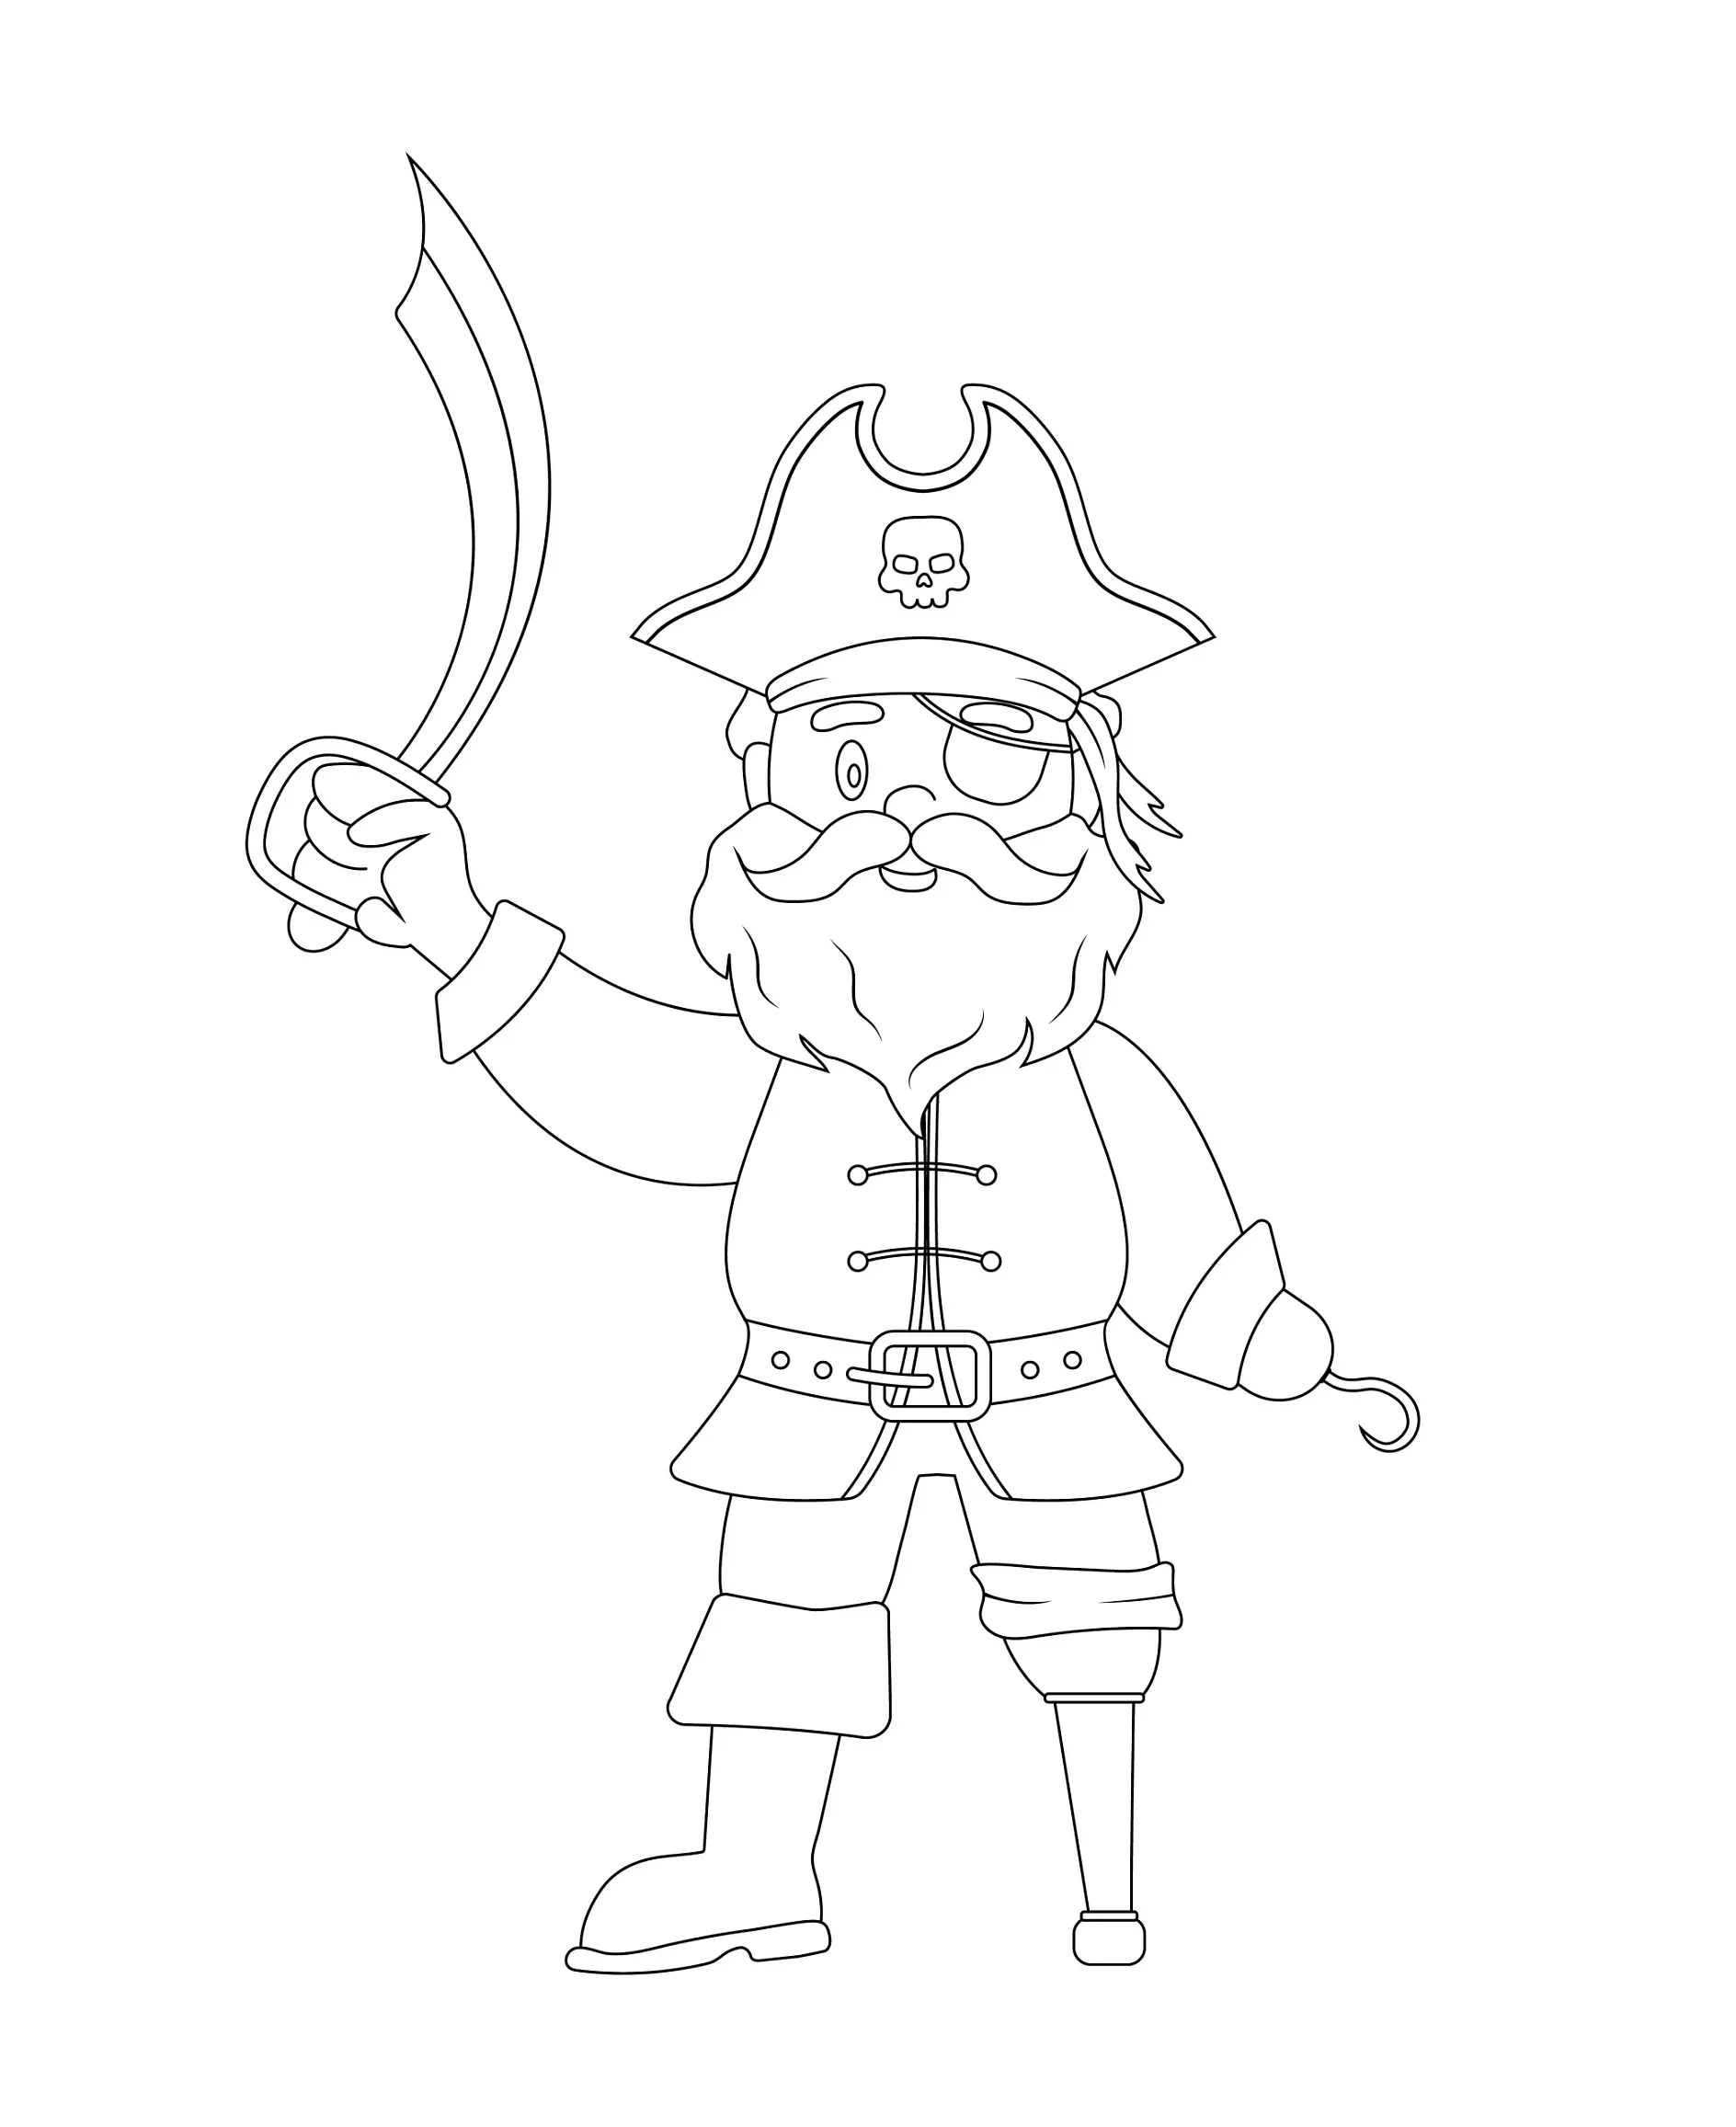 Ausmalbild Pirat mit Bart und Holzbein schwingt ein Schwert